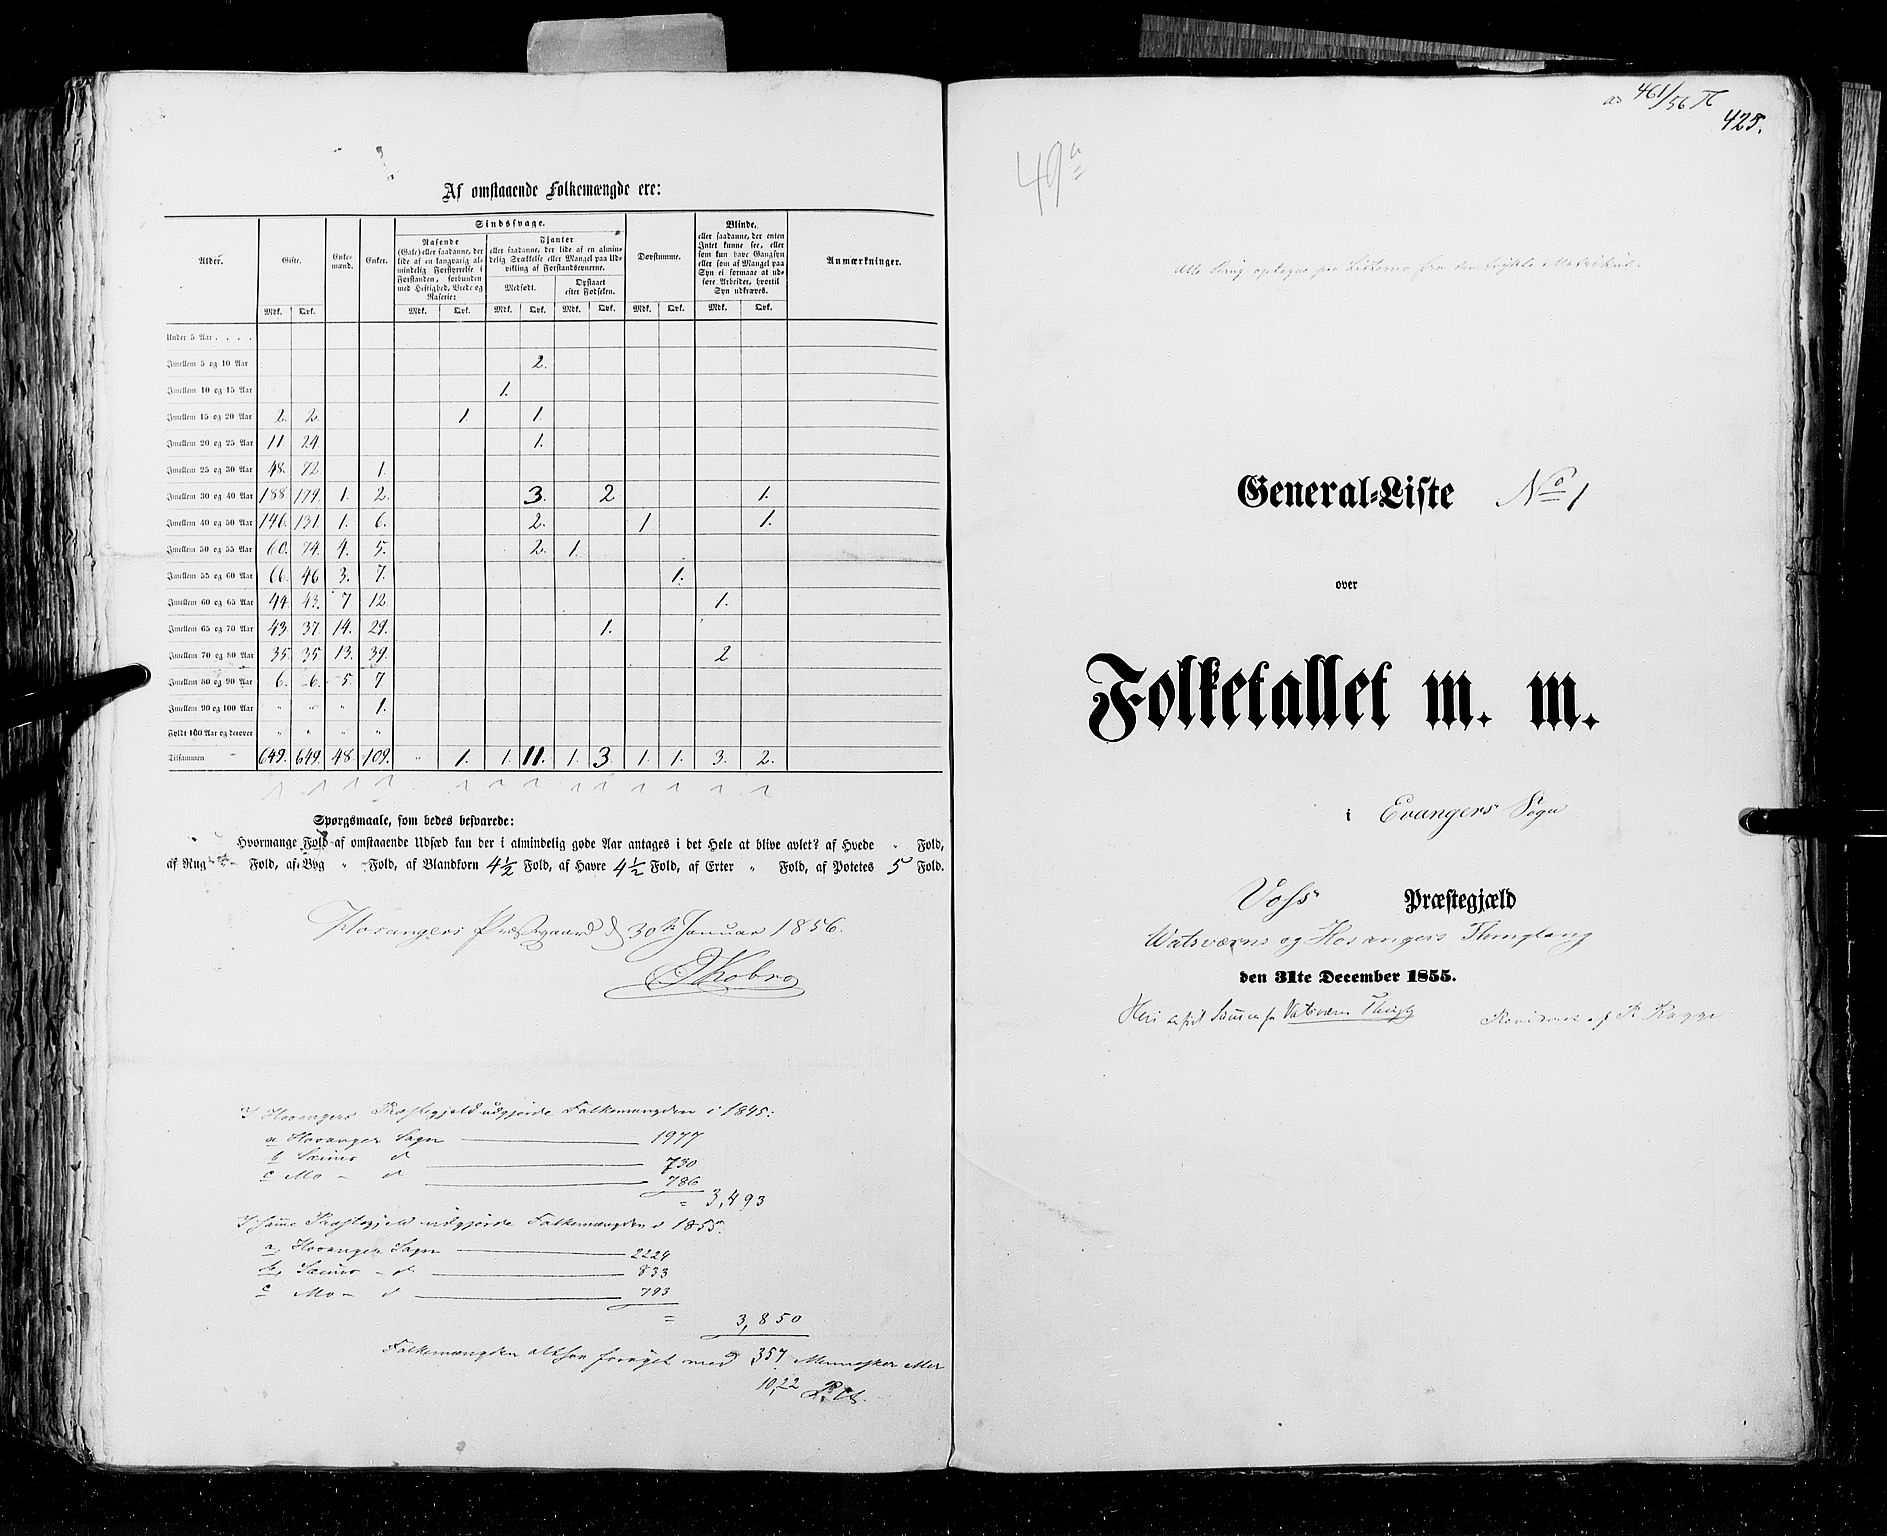 RA, Folketellingen 1855, bind 4: Stavanger amt og Søndre Bergenhus amt, 1855, s. 425